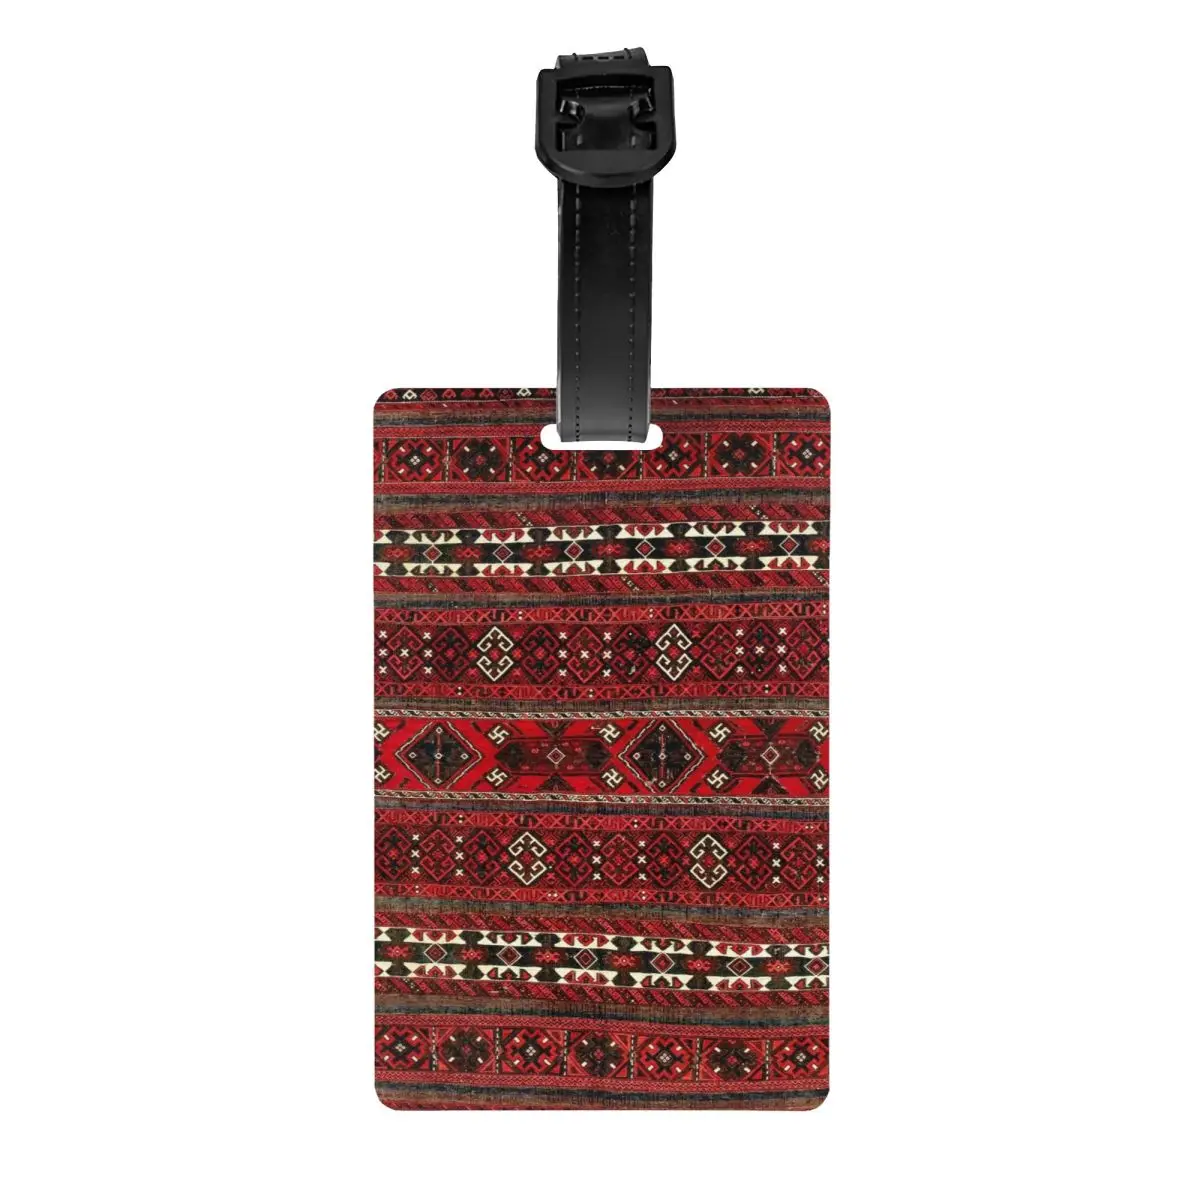 

Baluch плоский плетеный античный афганистанский ковер, бирка для багажа, винтажный турецкий килим этнический арт, дорожная сумка, чемодан, крышка для личной безопасности, идентификационная этикетка